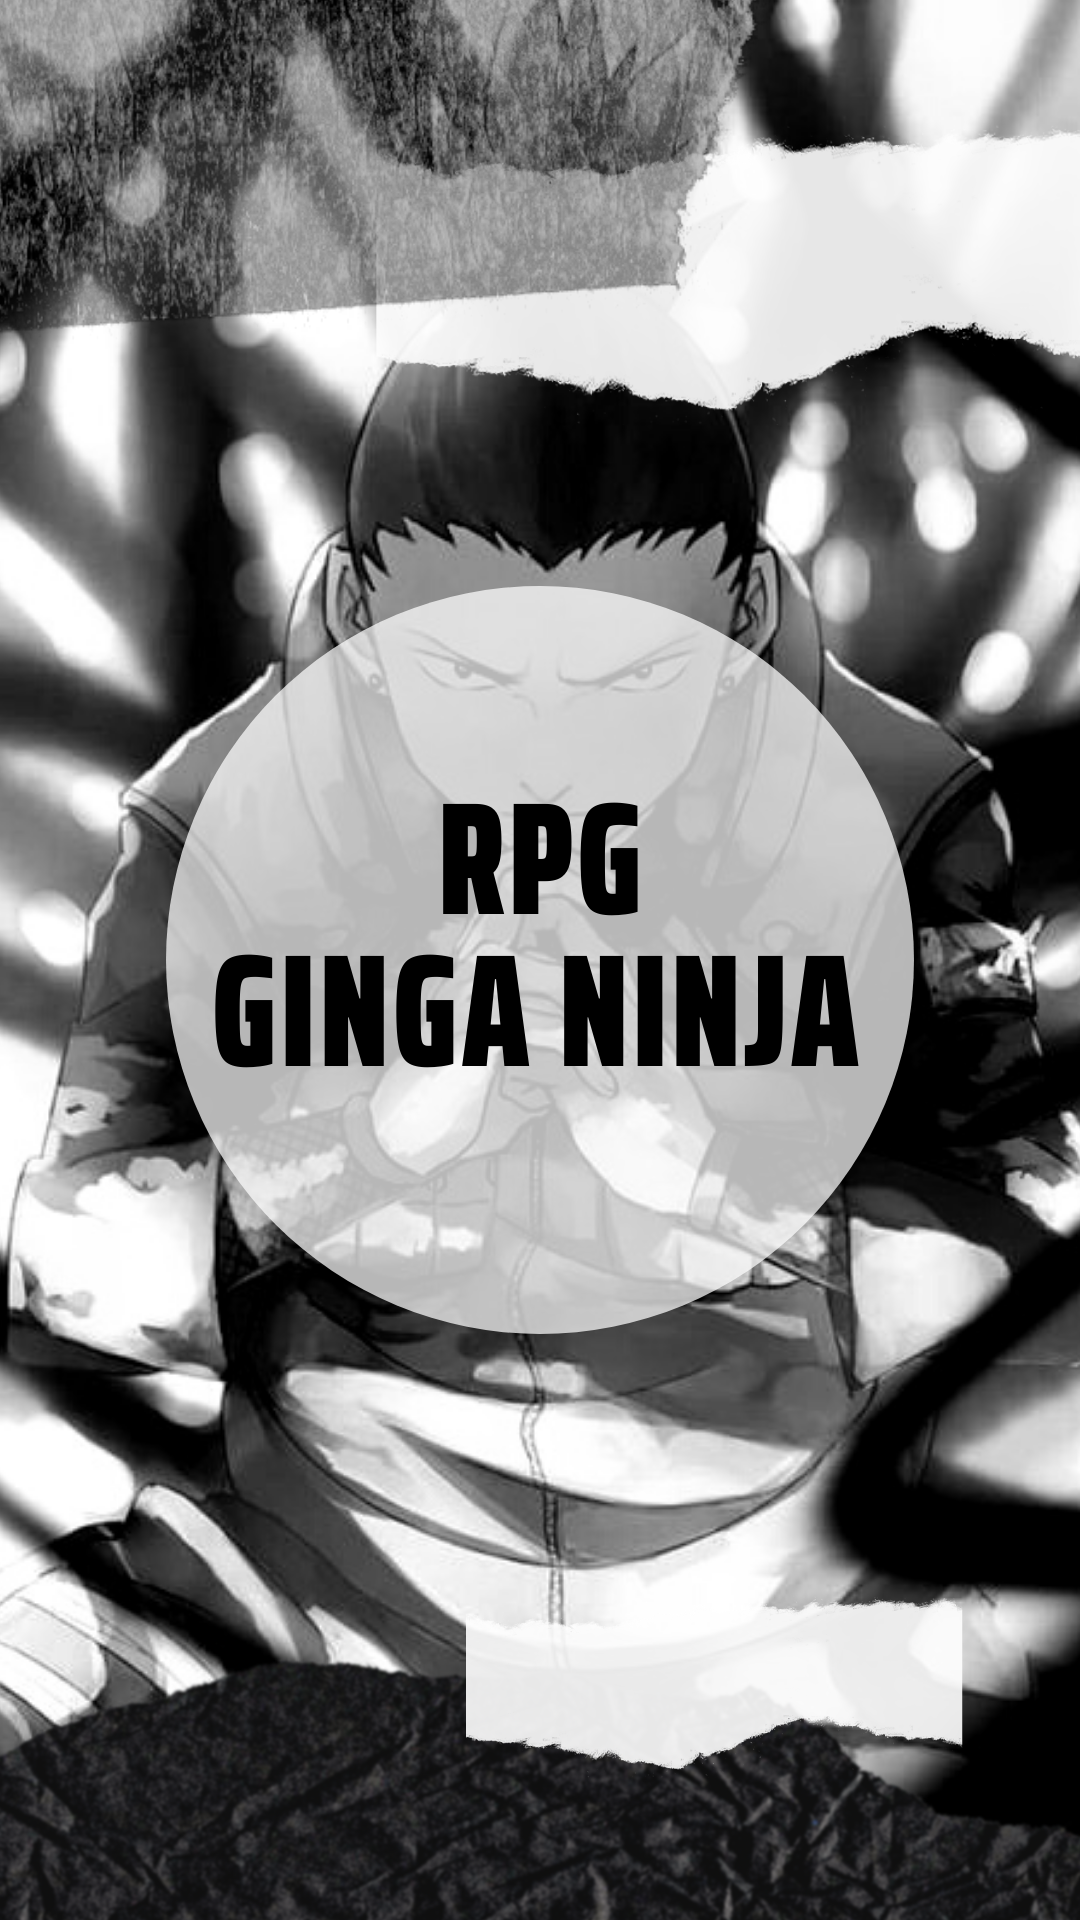 RPG Ginga Ninja,gruposdozap.net